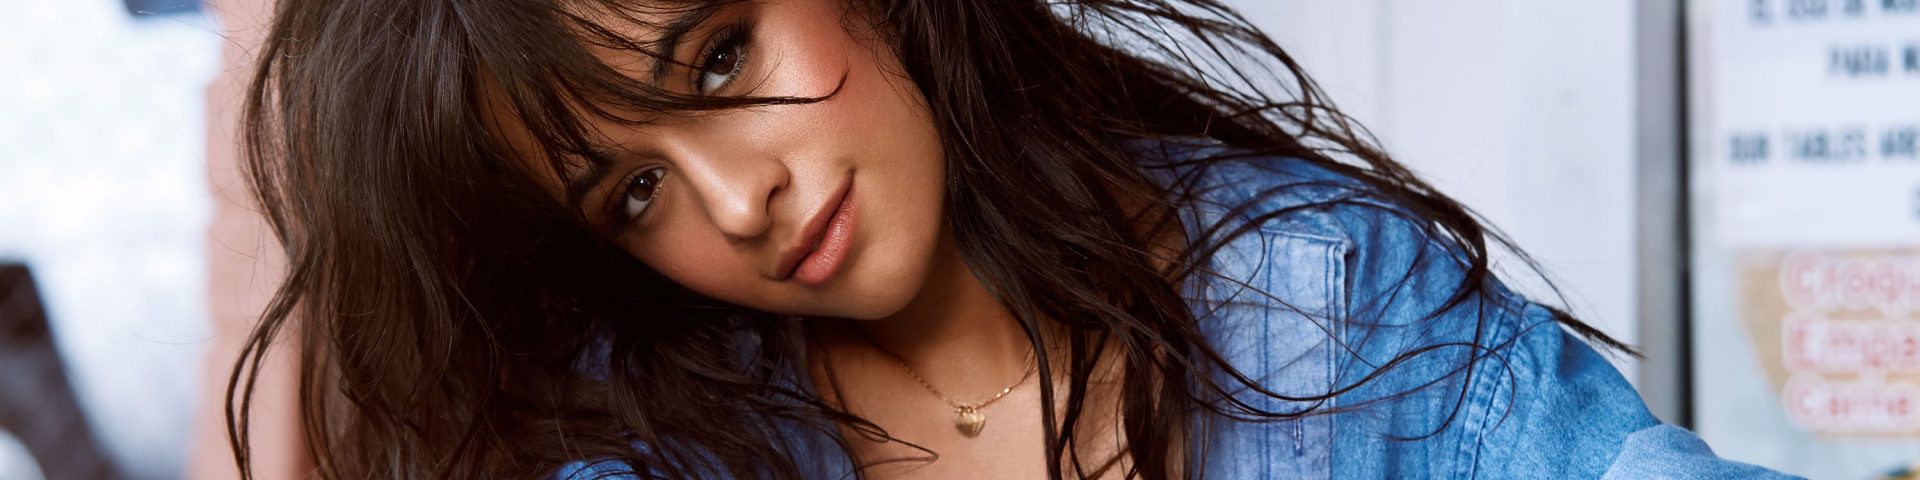 MTV EMA 2018, tutte le nomination: Camila Cabello in pole position